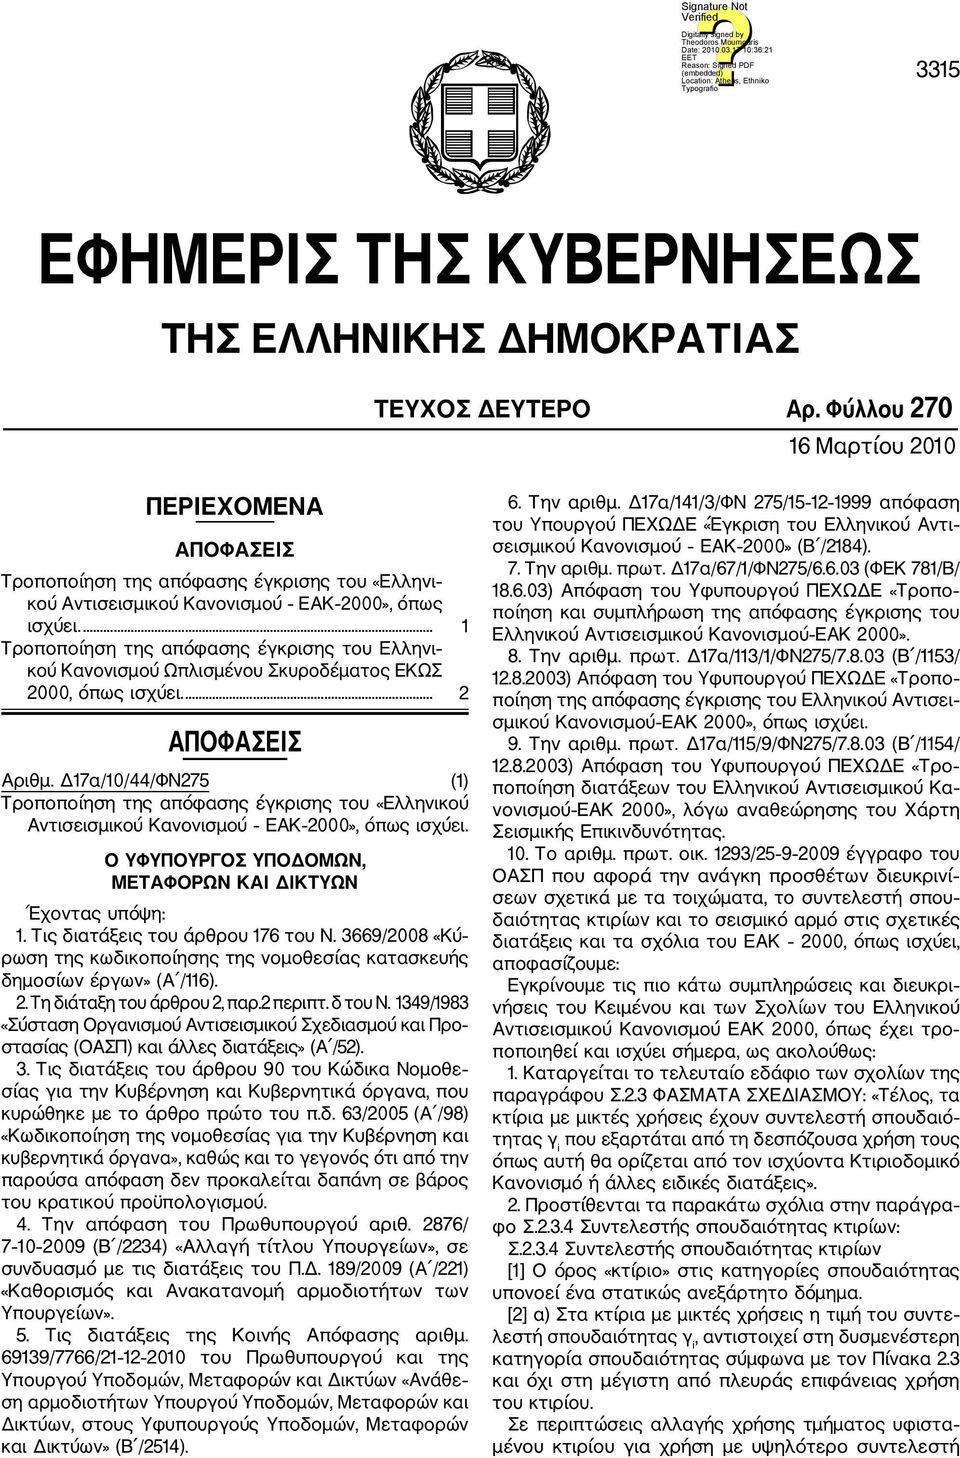 ... 1 Τροποποίηση της απόφασης έγκρισης του Ελληνι κού Κανονισμού Ωπλισμένου Σκυροδέματος ΕΚΩΣ 2000, όπως ισχύει.... 2 ΑΠΟΦΑΣΕΙΣ Αριθμ.